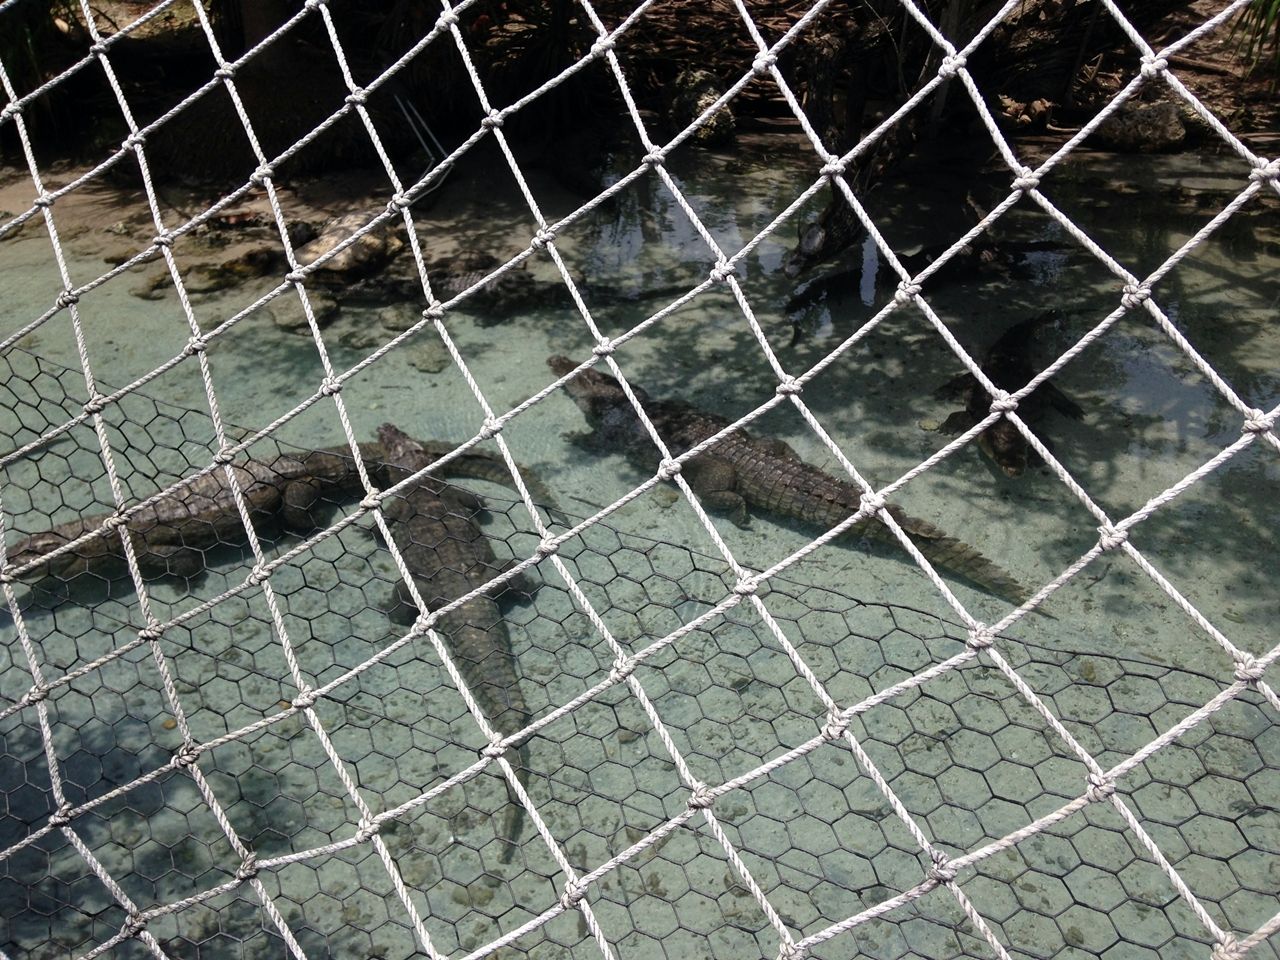 Alligators Miami Seaquarium